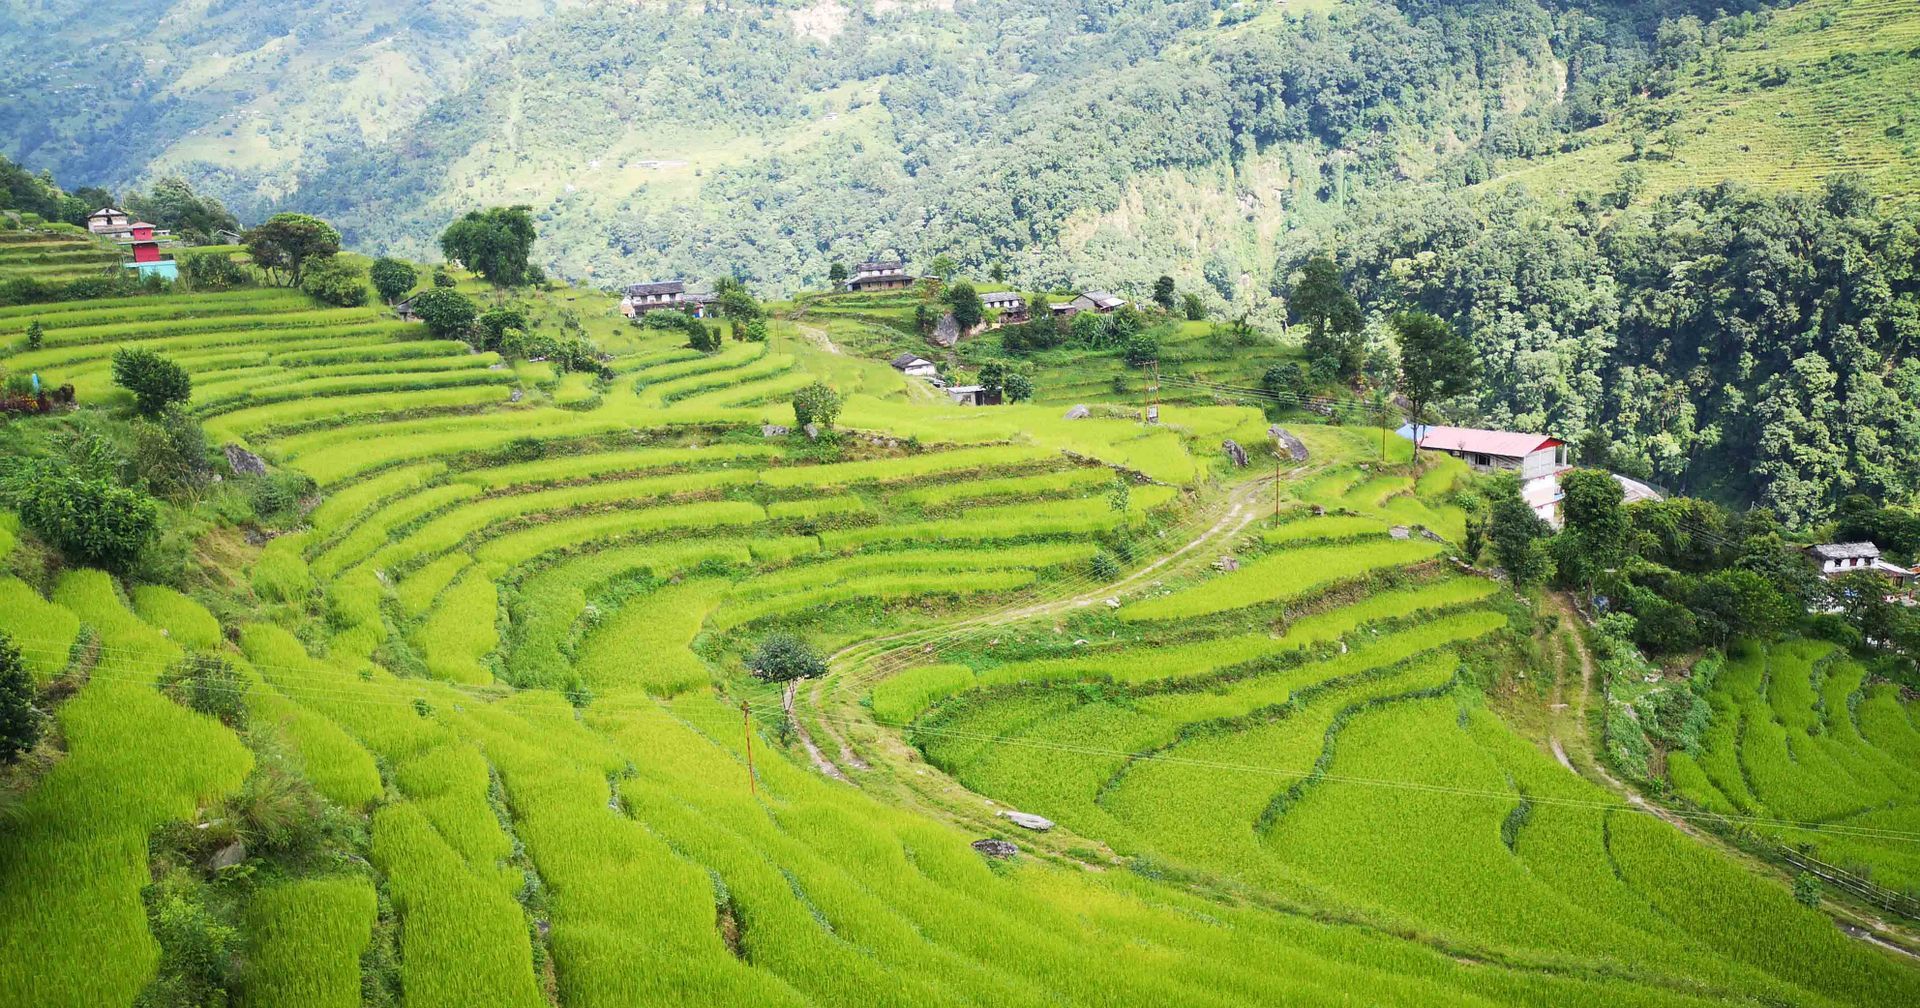 Rice fields on trekking in Nepal